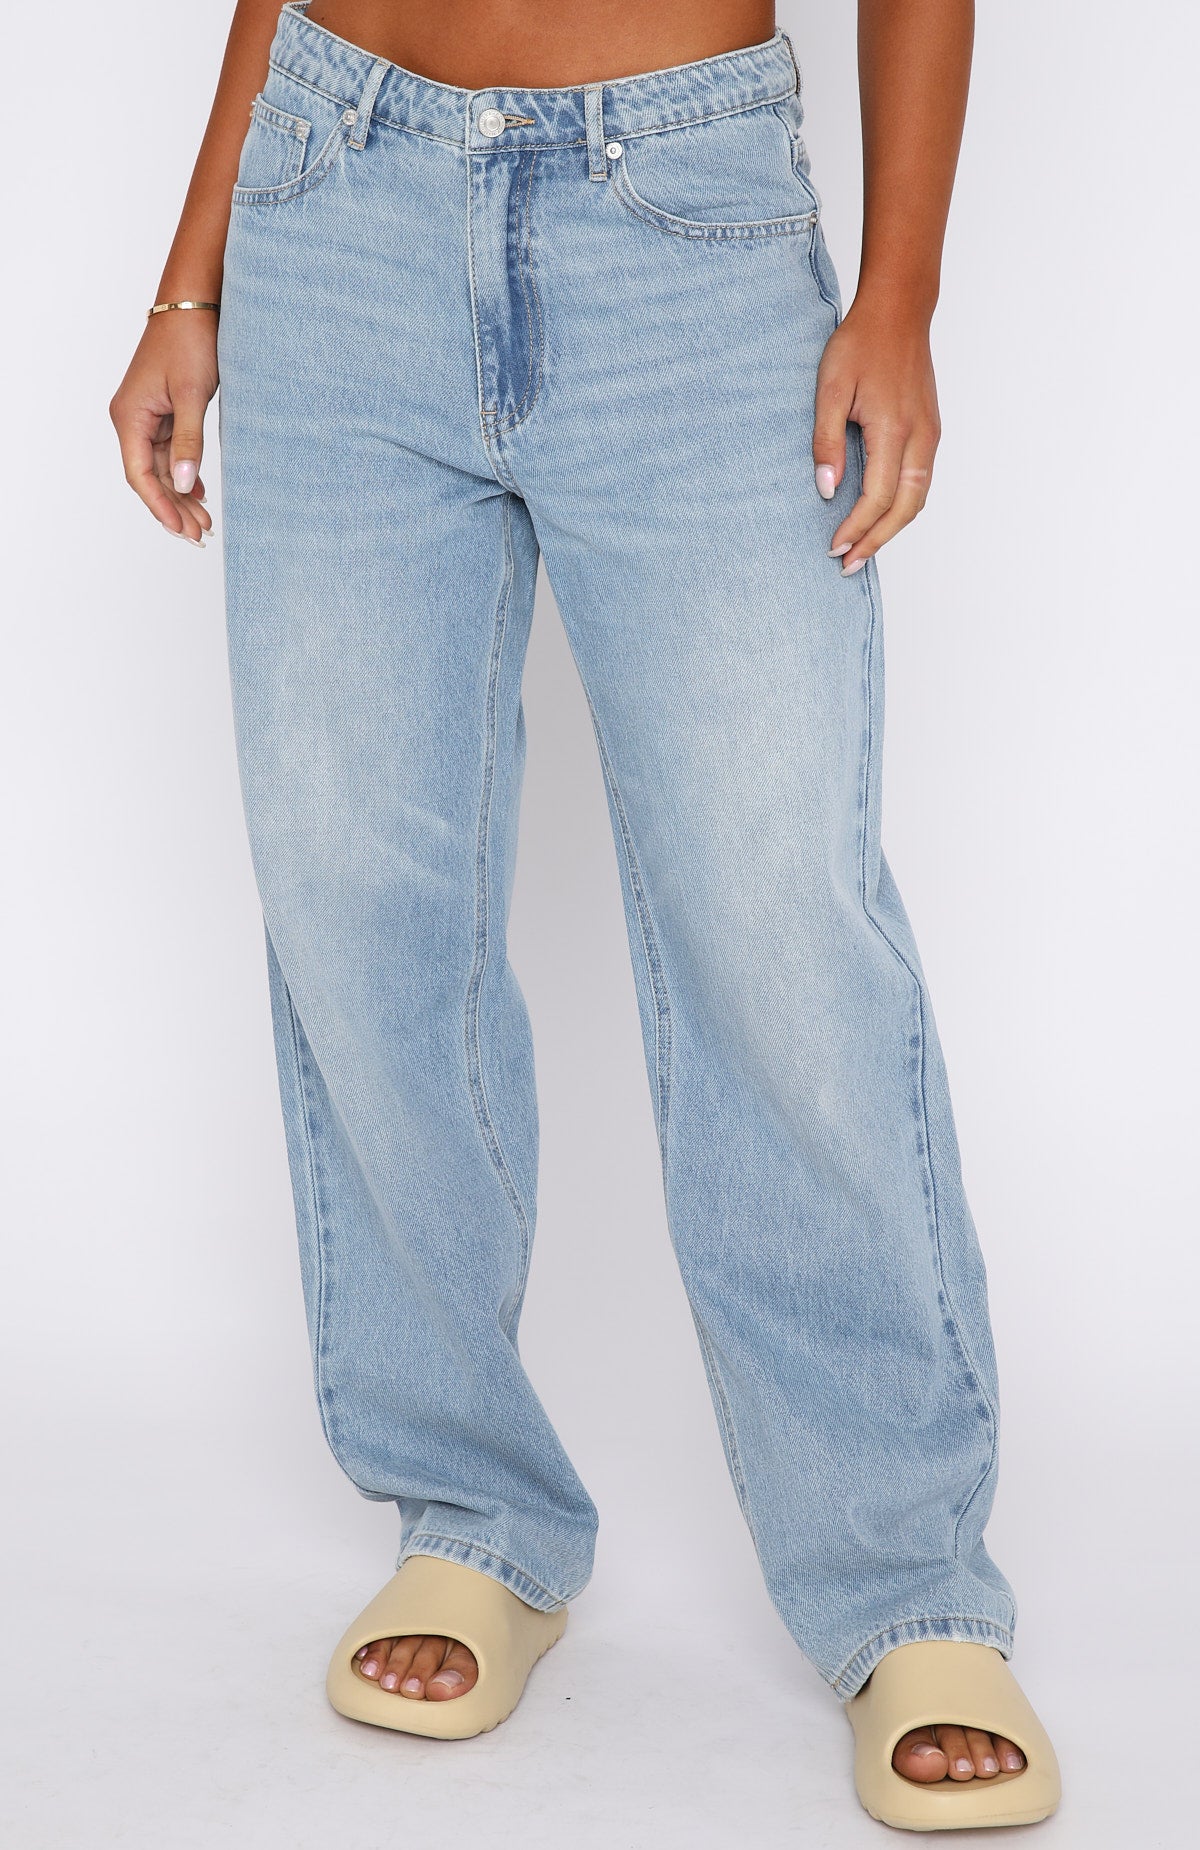 louis vuitton wavy jeans｜TikTok Search